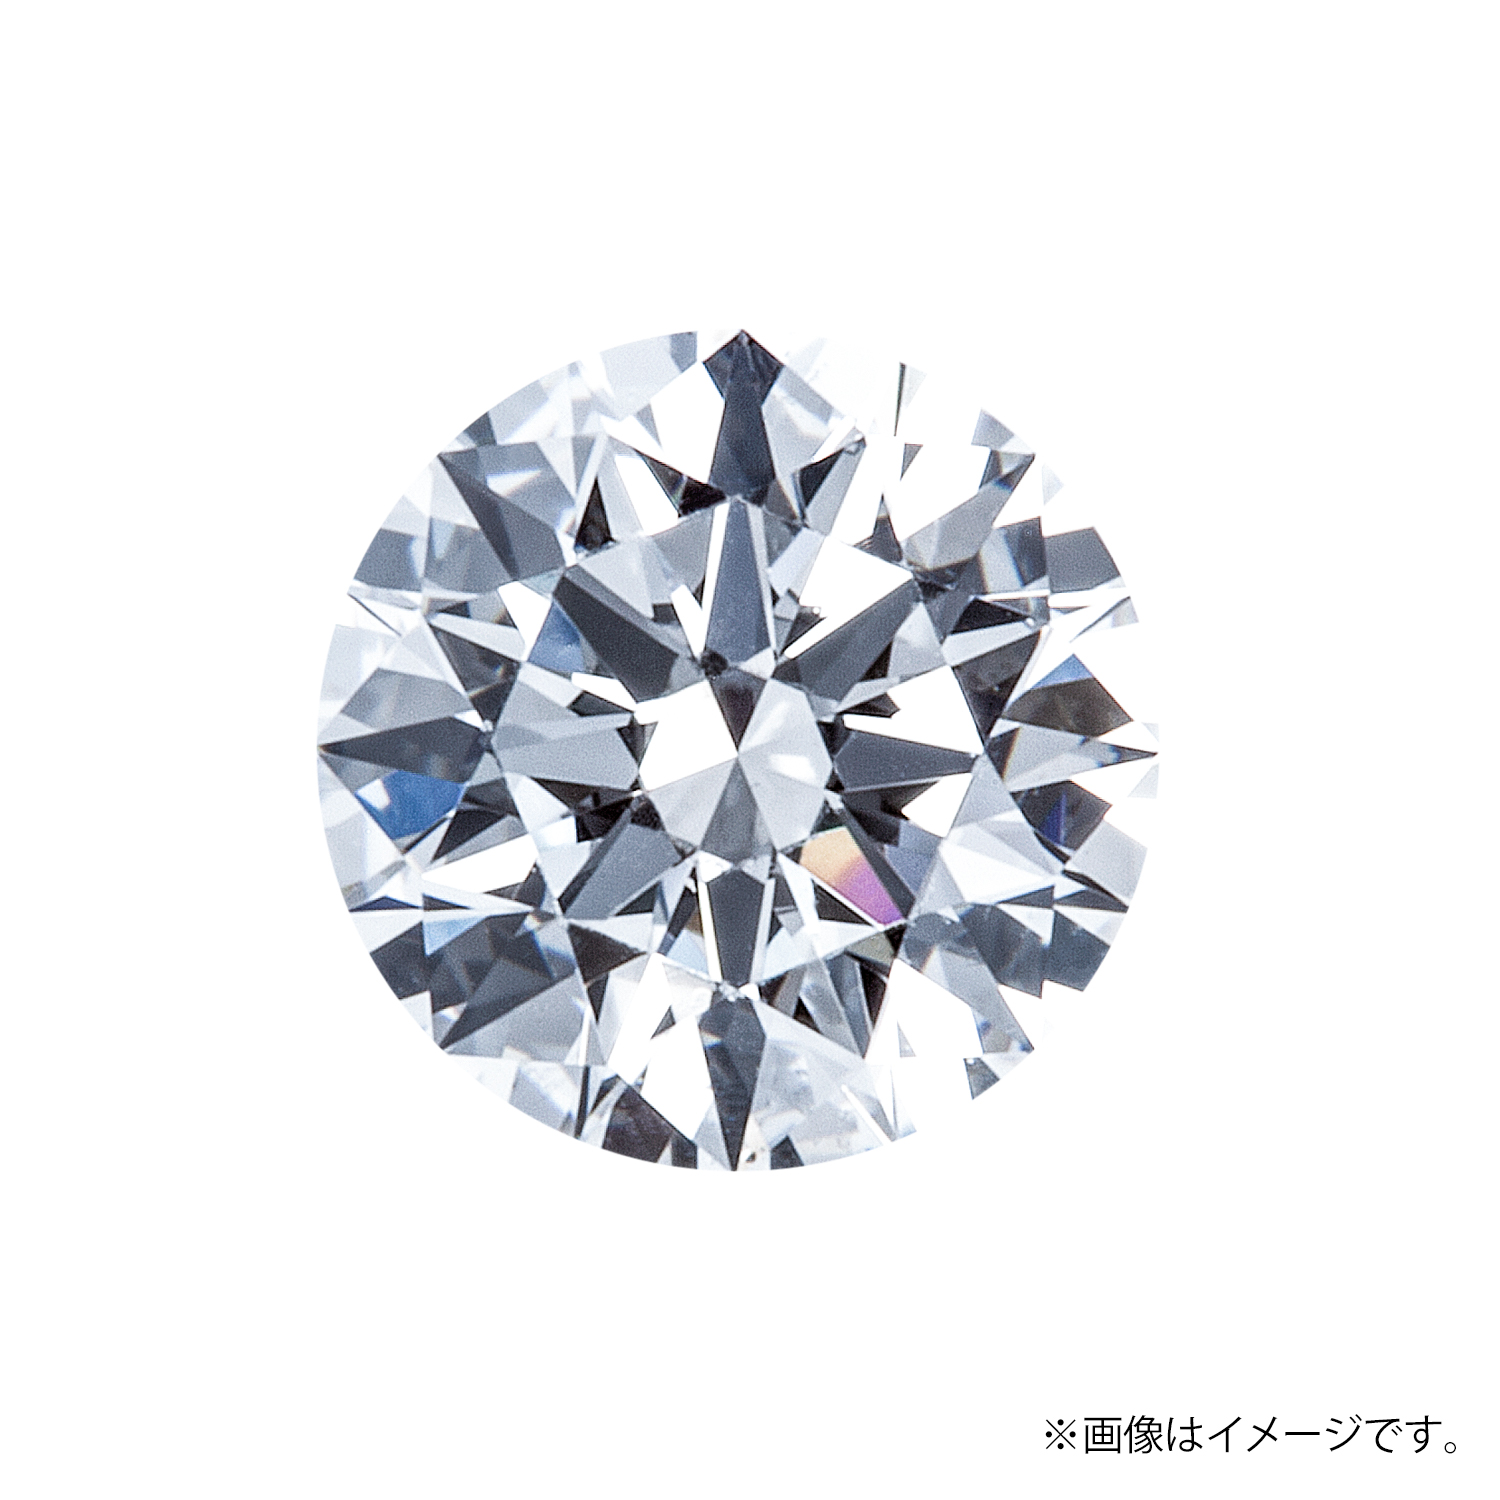 0.189ct Round ダイヤモンド / F / VVS2 / VERY GOOD